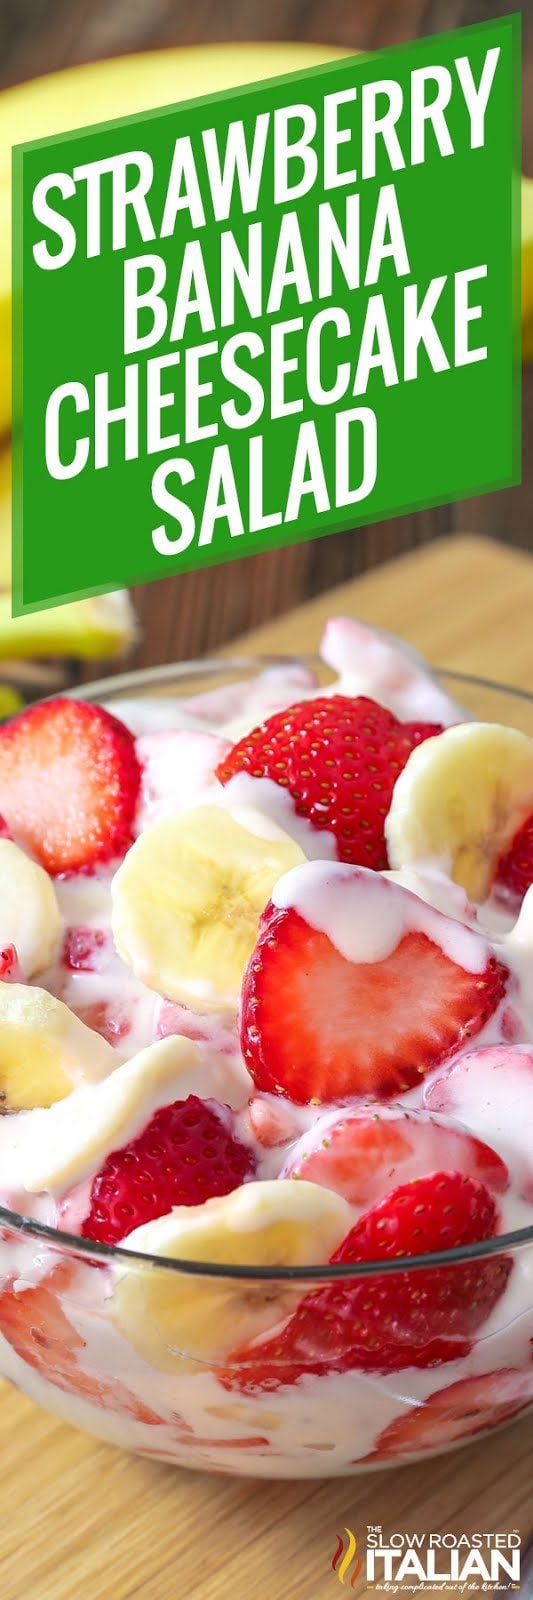 strawberry-banana-cheesecake-salad-pin-8533237